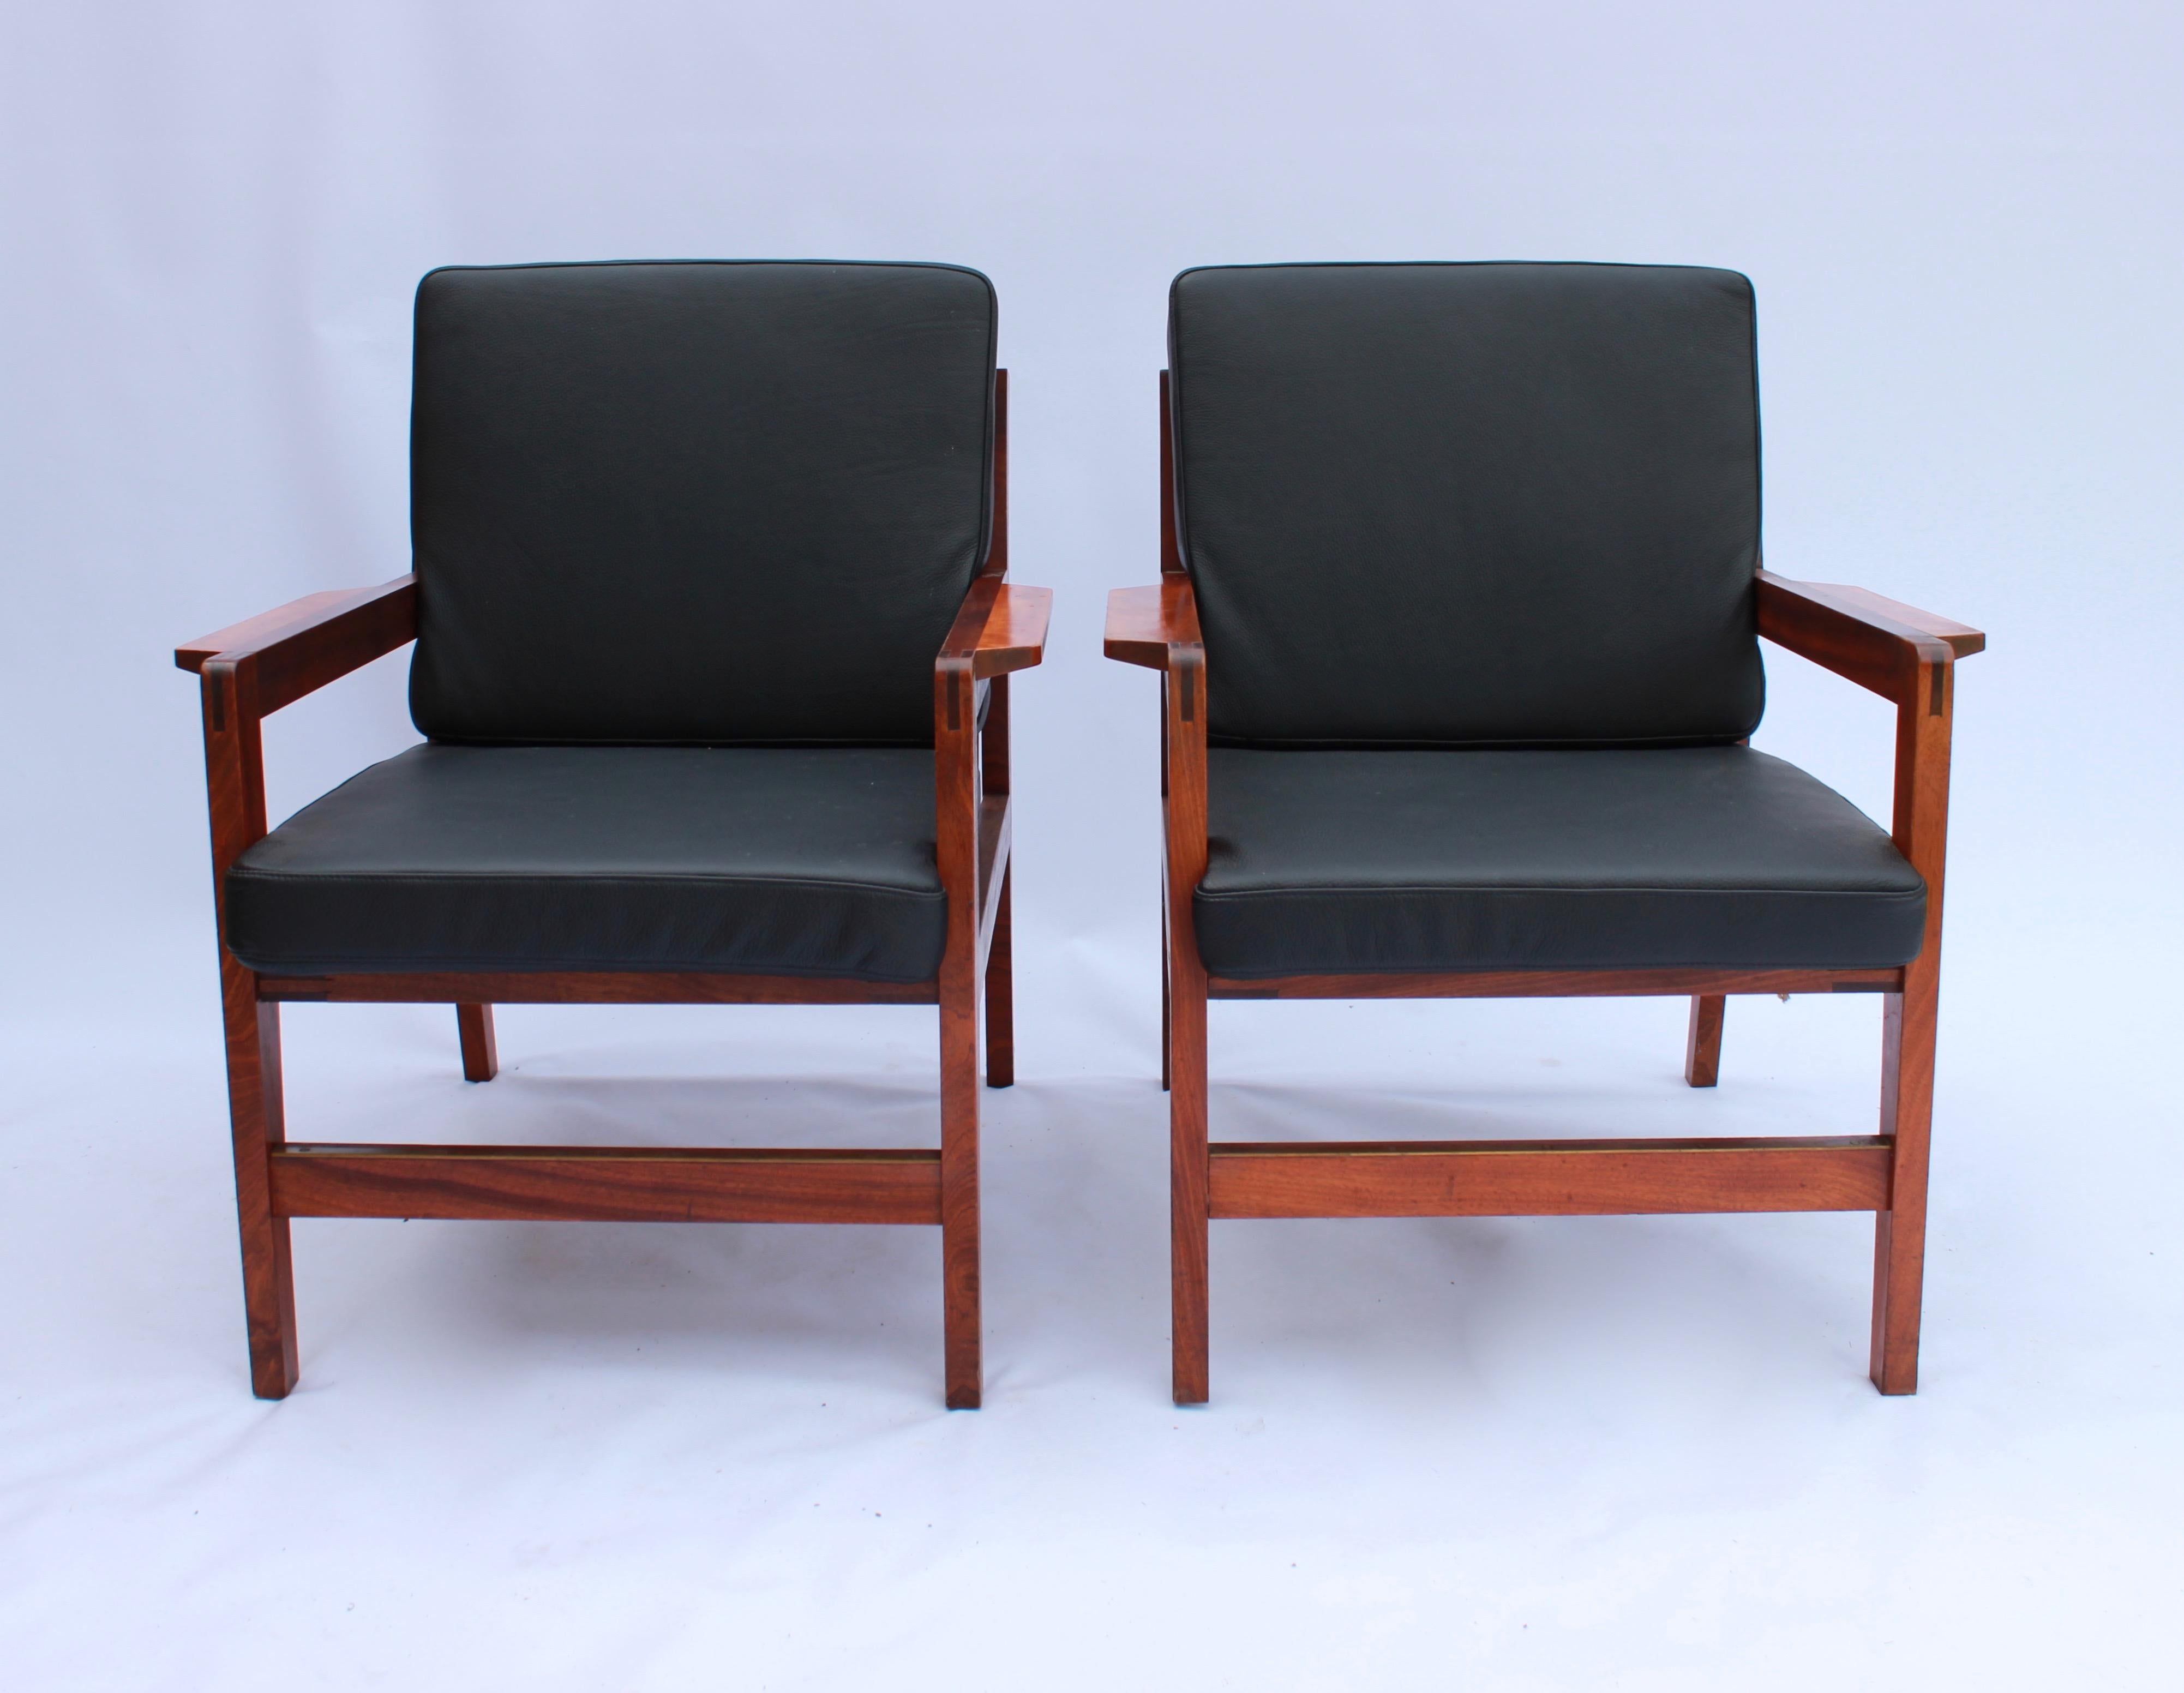 Une paire de chaises longues en bois poli et cuir Classic noir de conception danoise des années 1960. Les chaises sont en excellent état vintage.